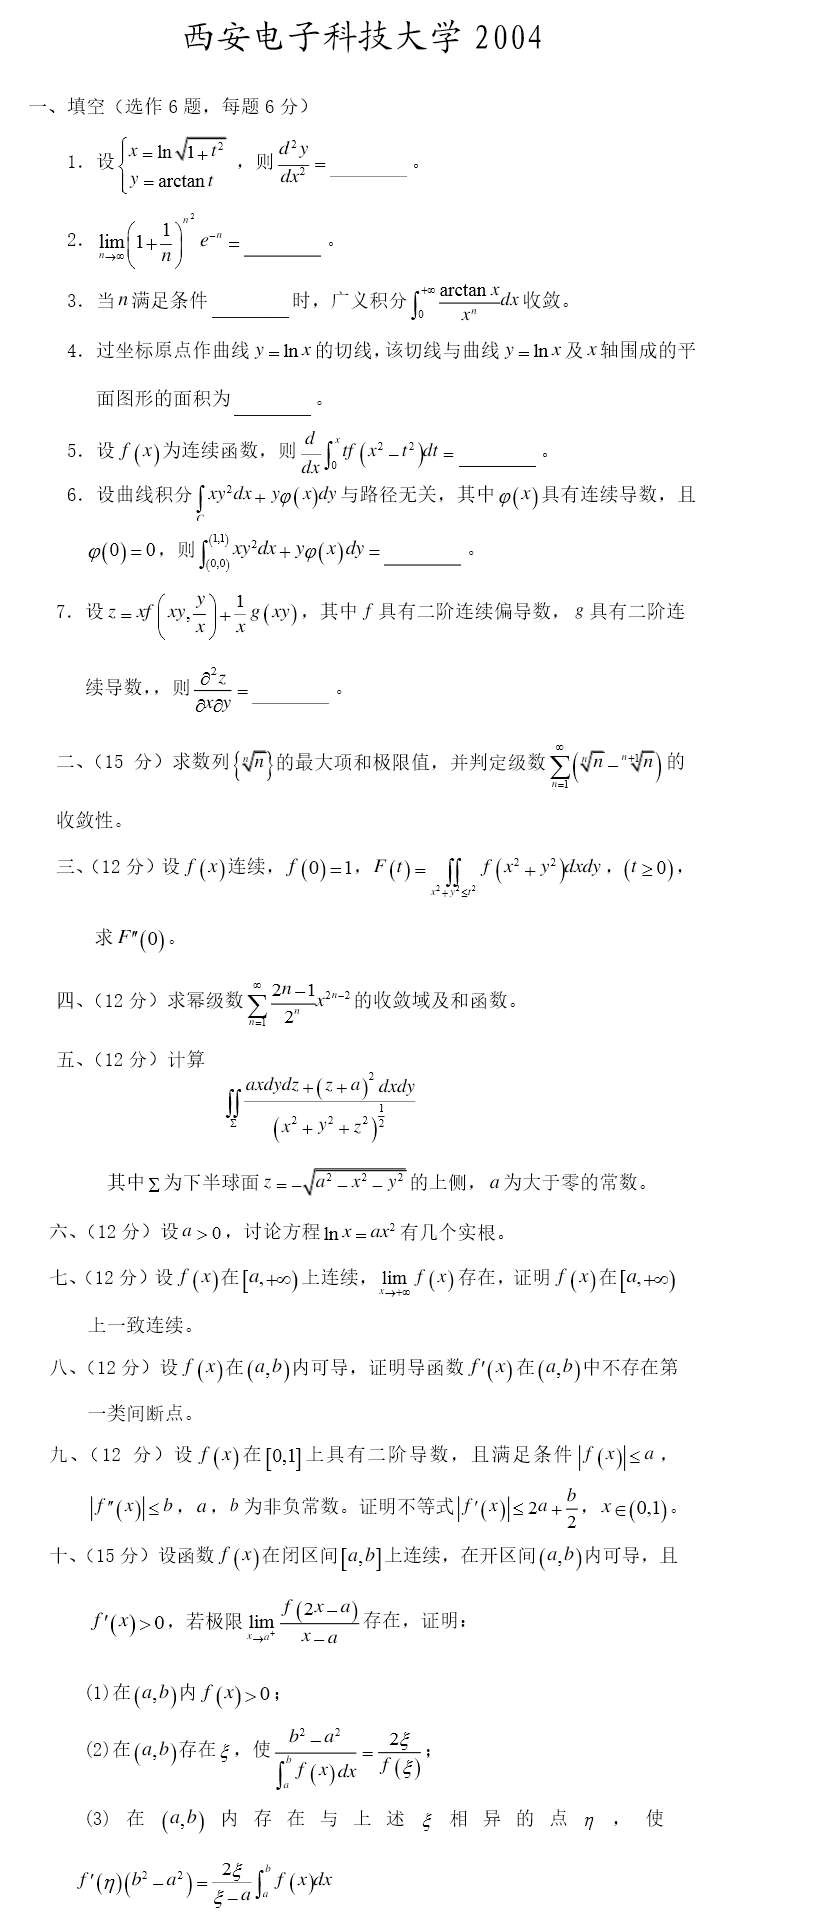 2004西安电子科技大学考研数学真题（数学分析）.png